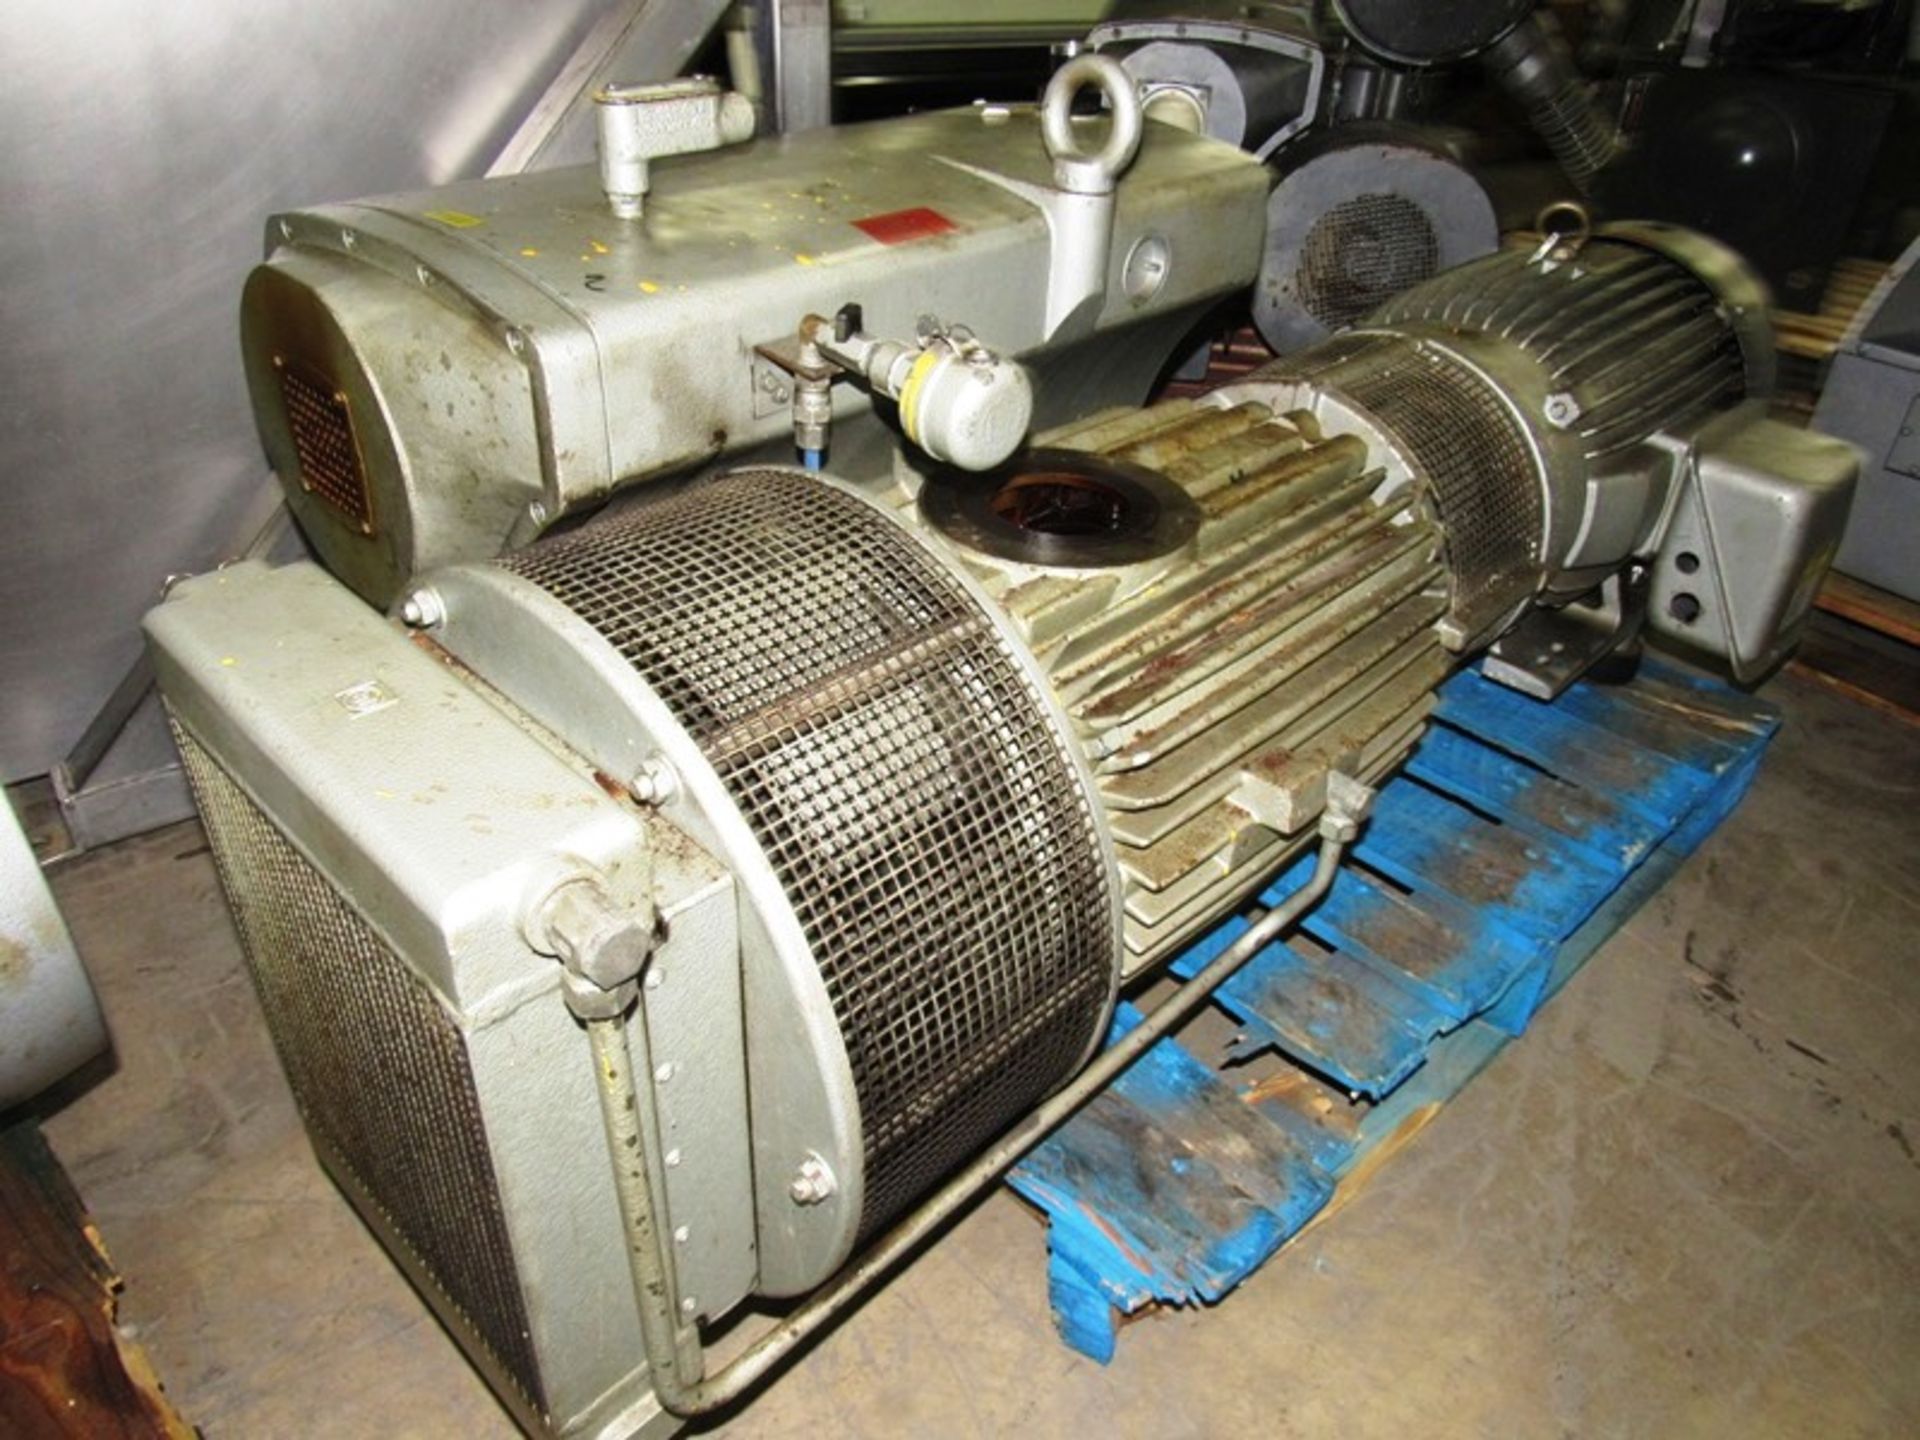 Busch Mdl. RAO630.B4Z6.1001 Vacuum Pump, Ser. #C8031, 25 h.p. Toshiba motor, 230/460 volts with heat - Bild 3 aus 6